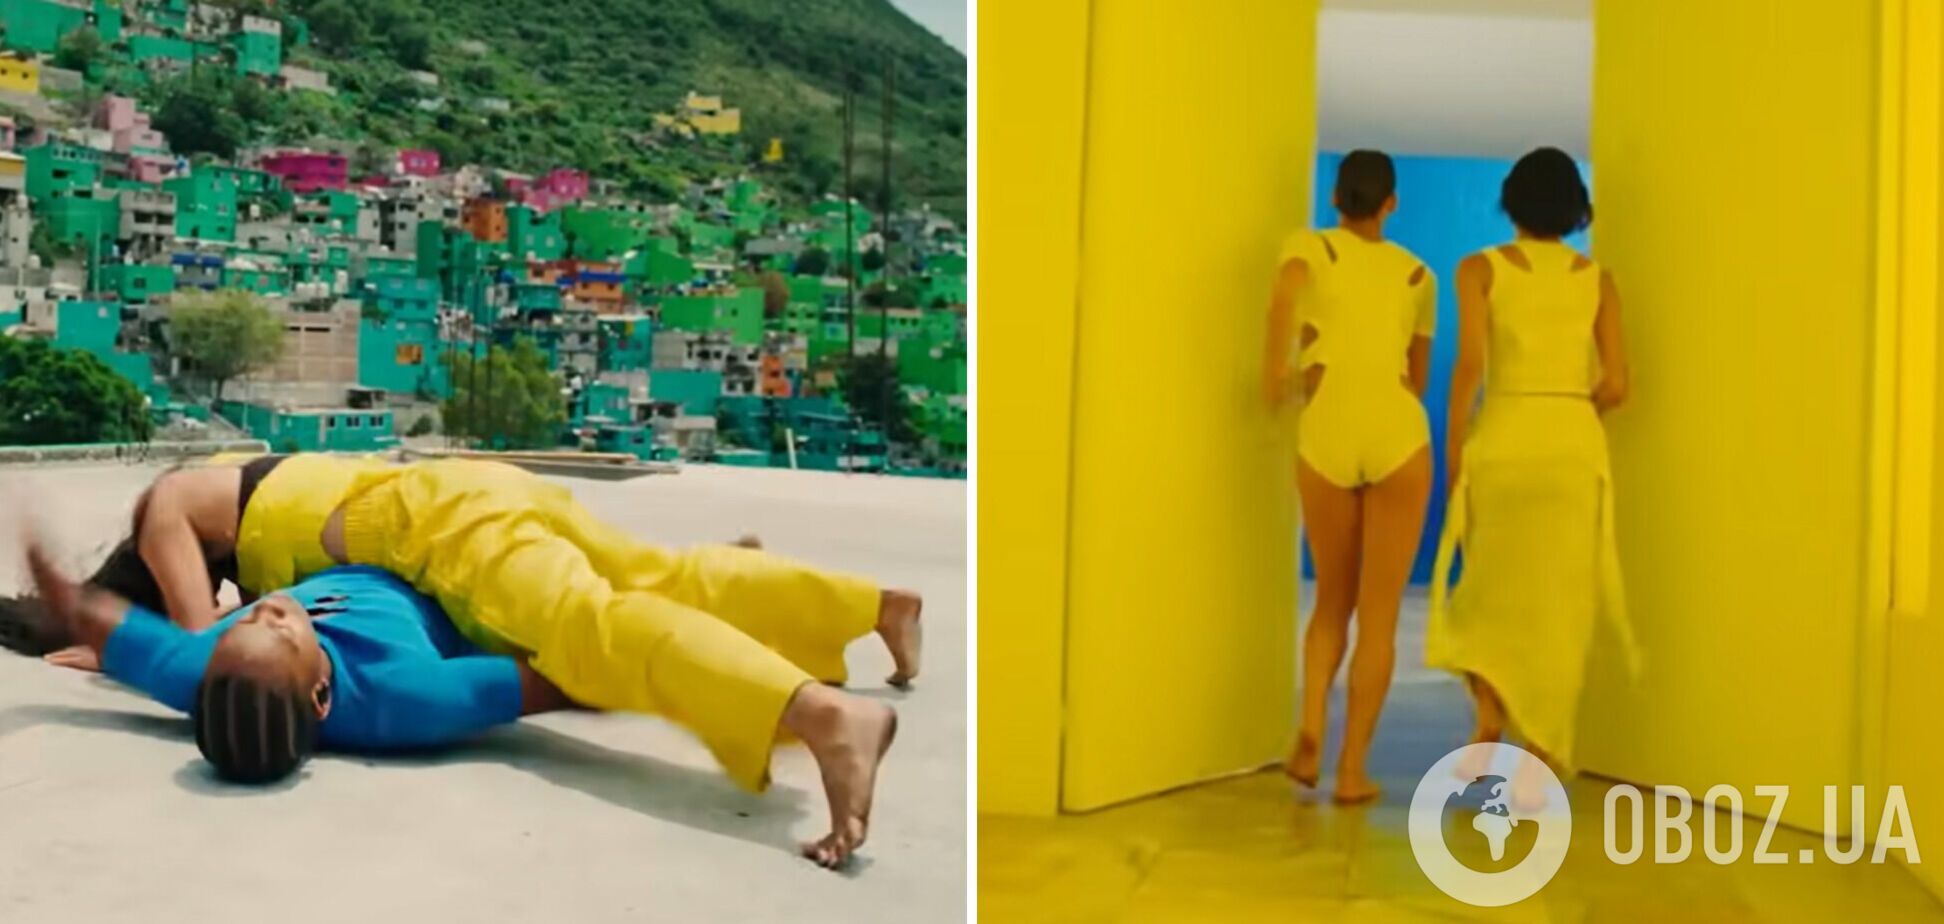 Украинский режиссер Таня Муиньо сняла клип в сине-желтых цветах для Бритни Спирс и Элтона Джона